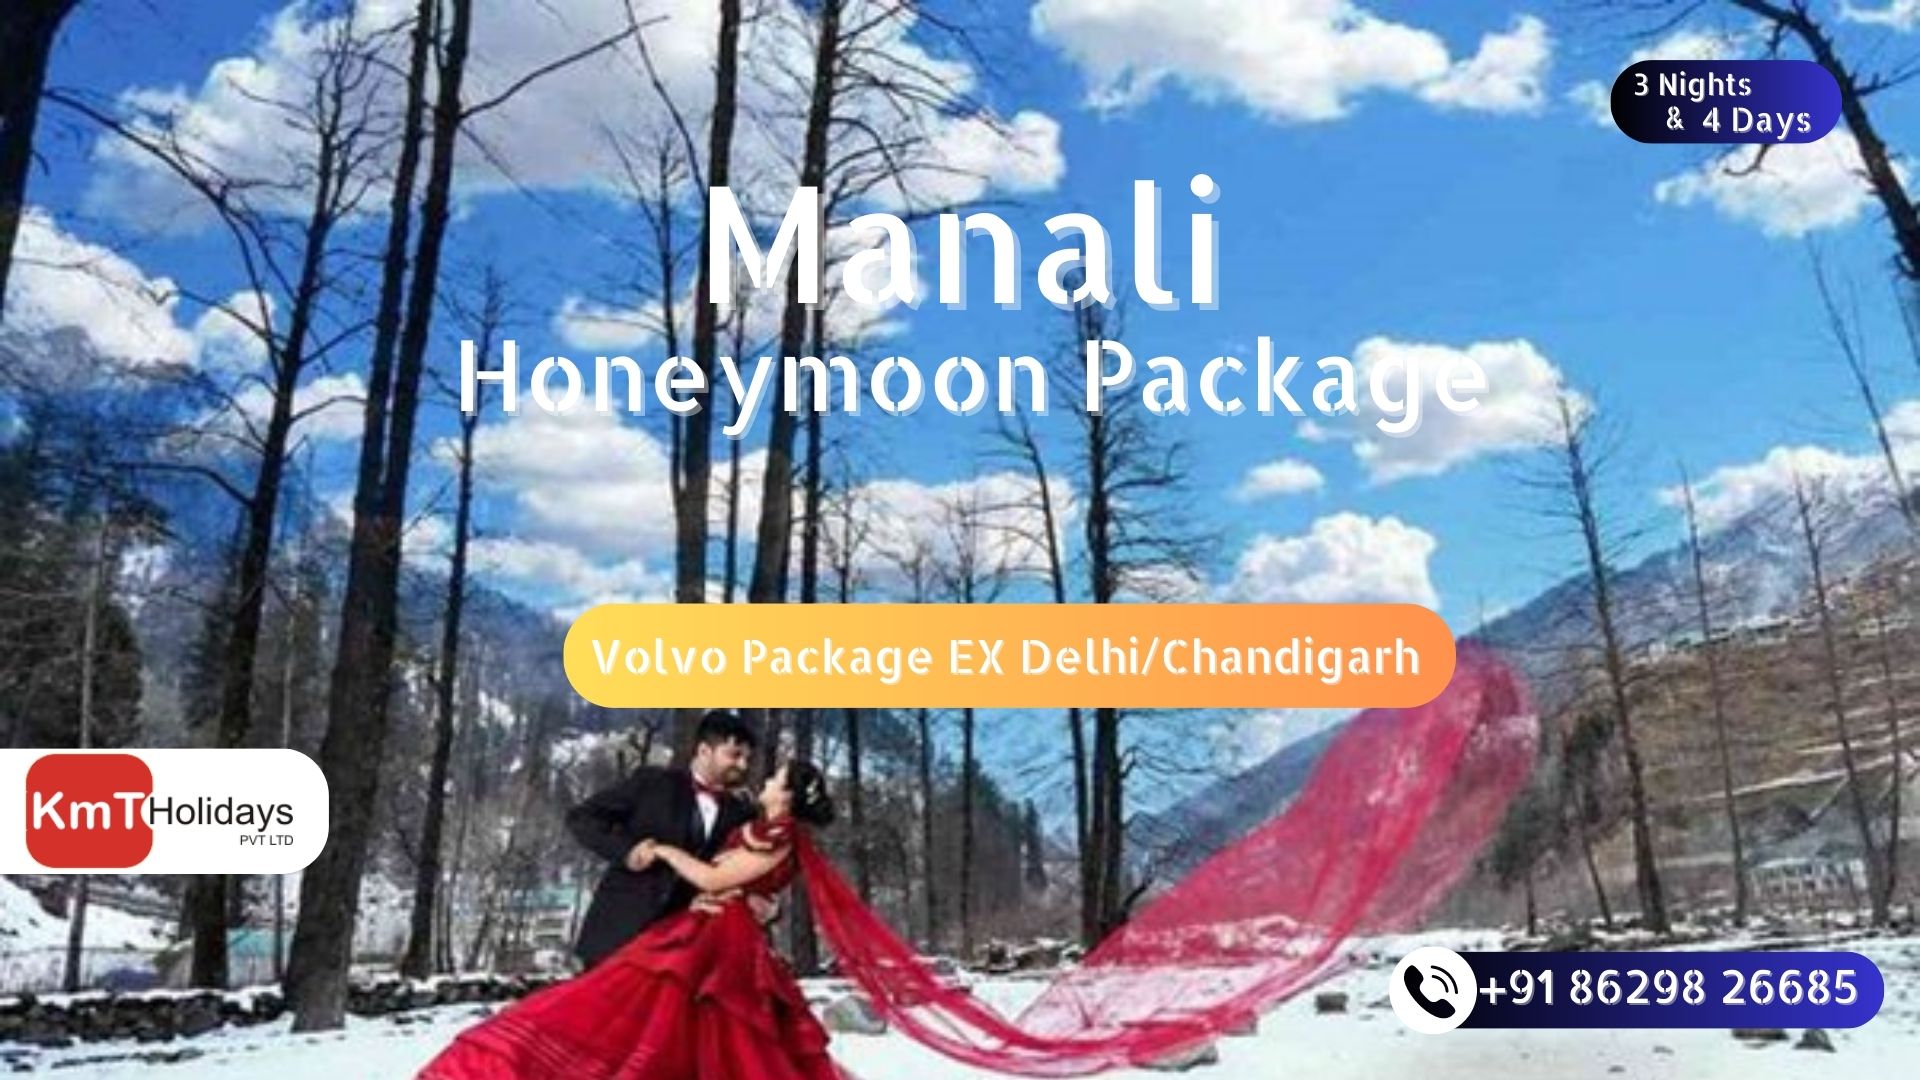 manali honeymoon package by volvo bus